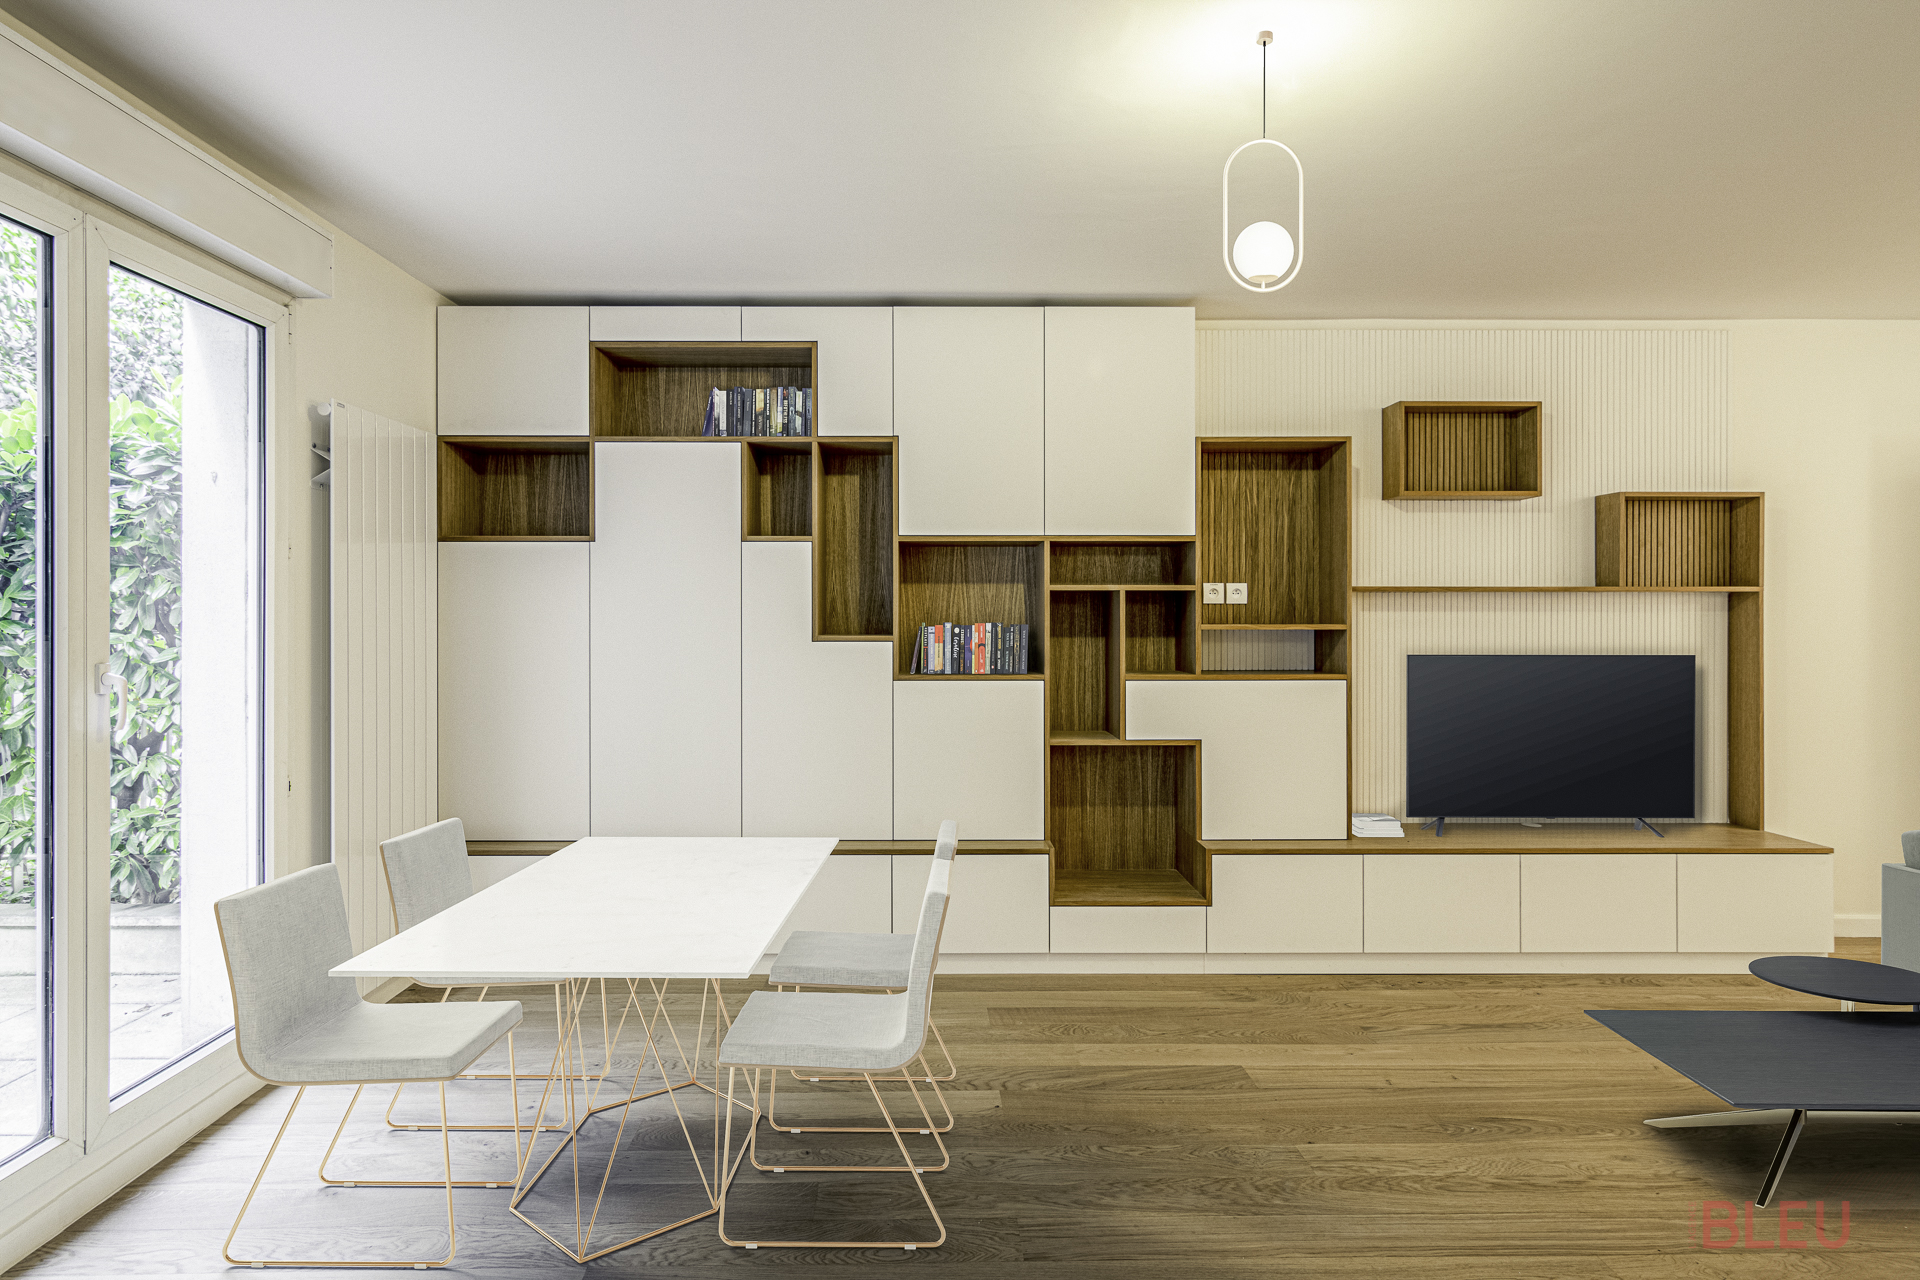 Espace de vie moderne et minimaliste avec table en marbre et système de rangement intégré, projet de plan duplex par cabinet architecture Paris.